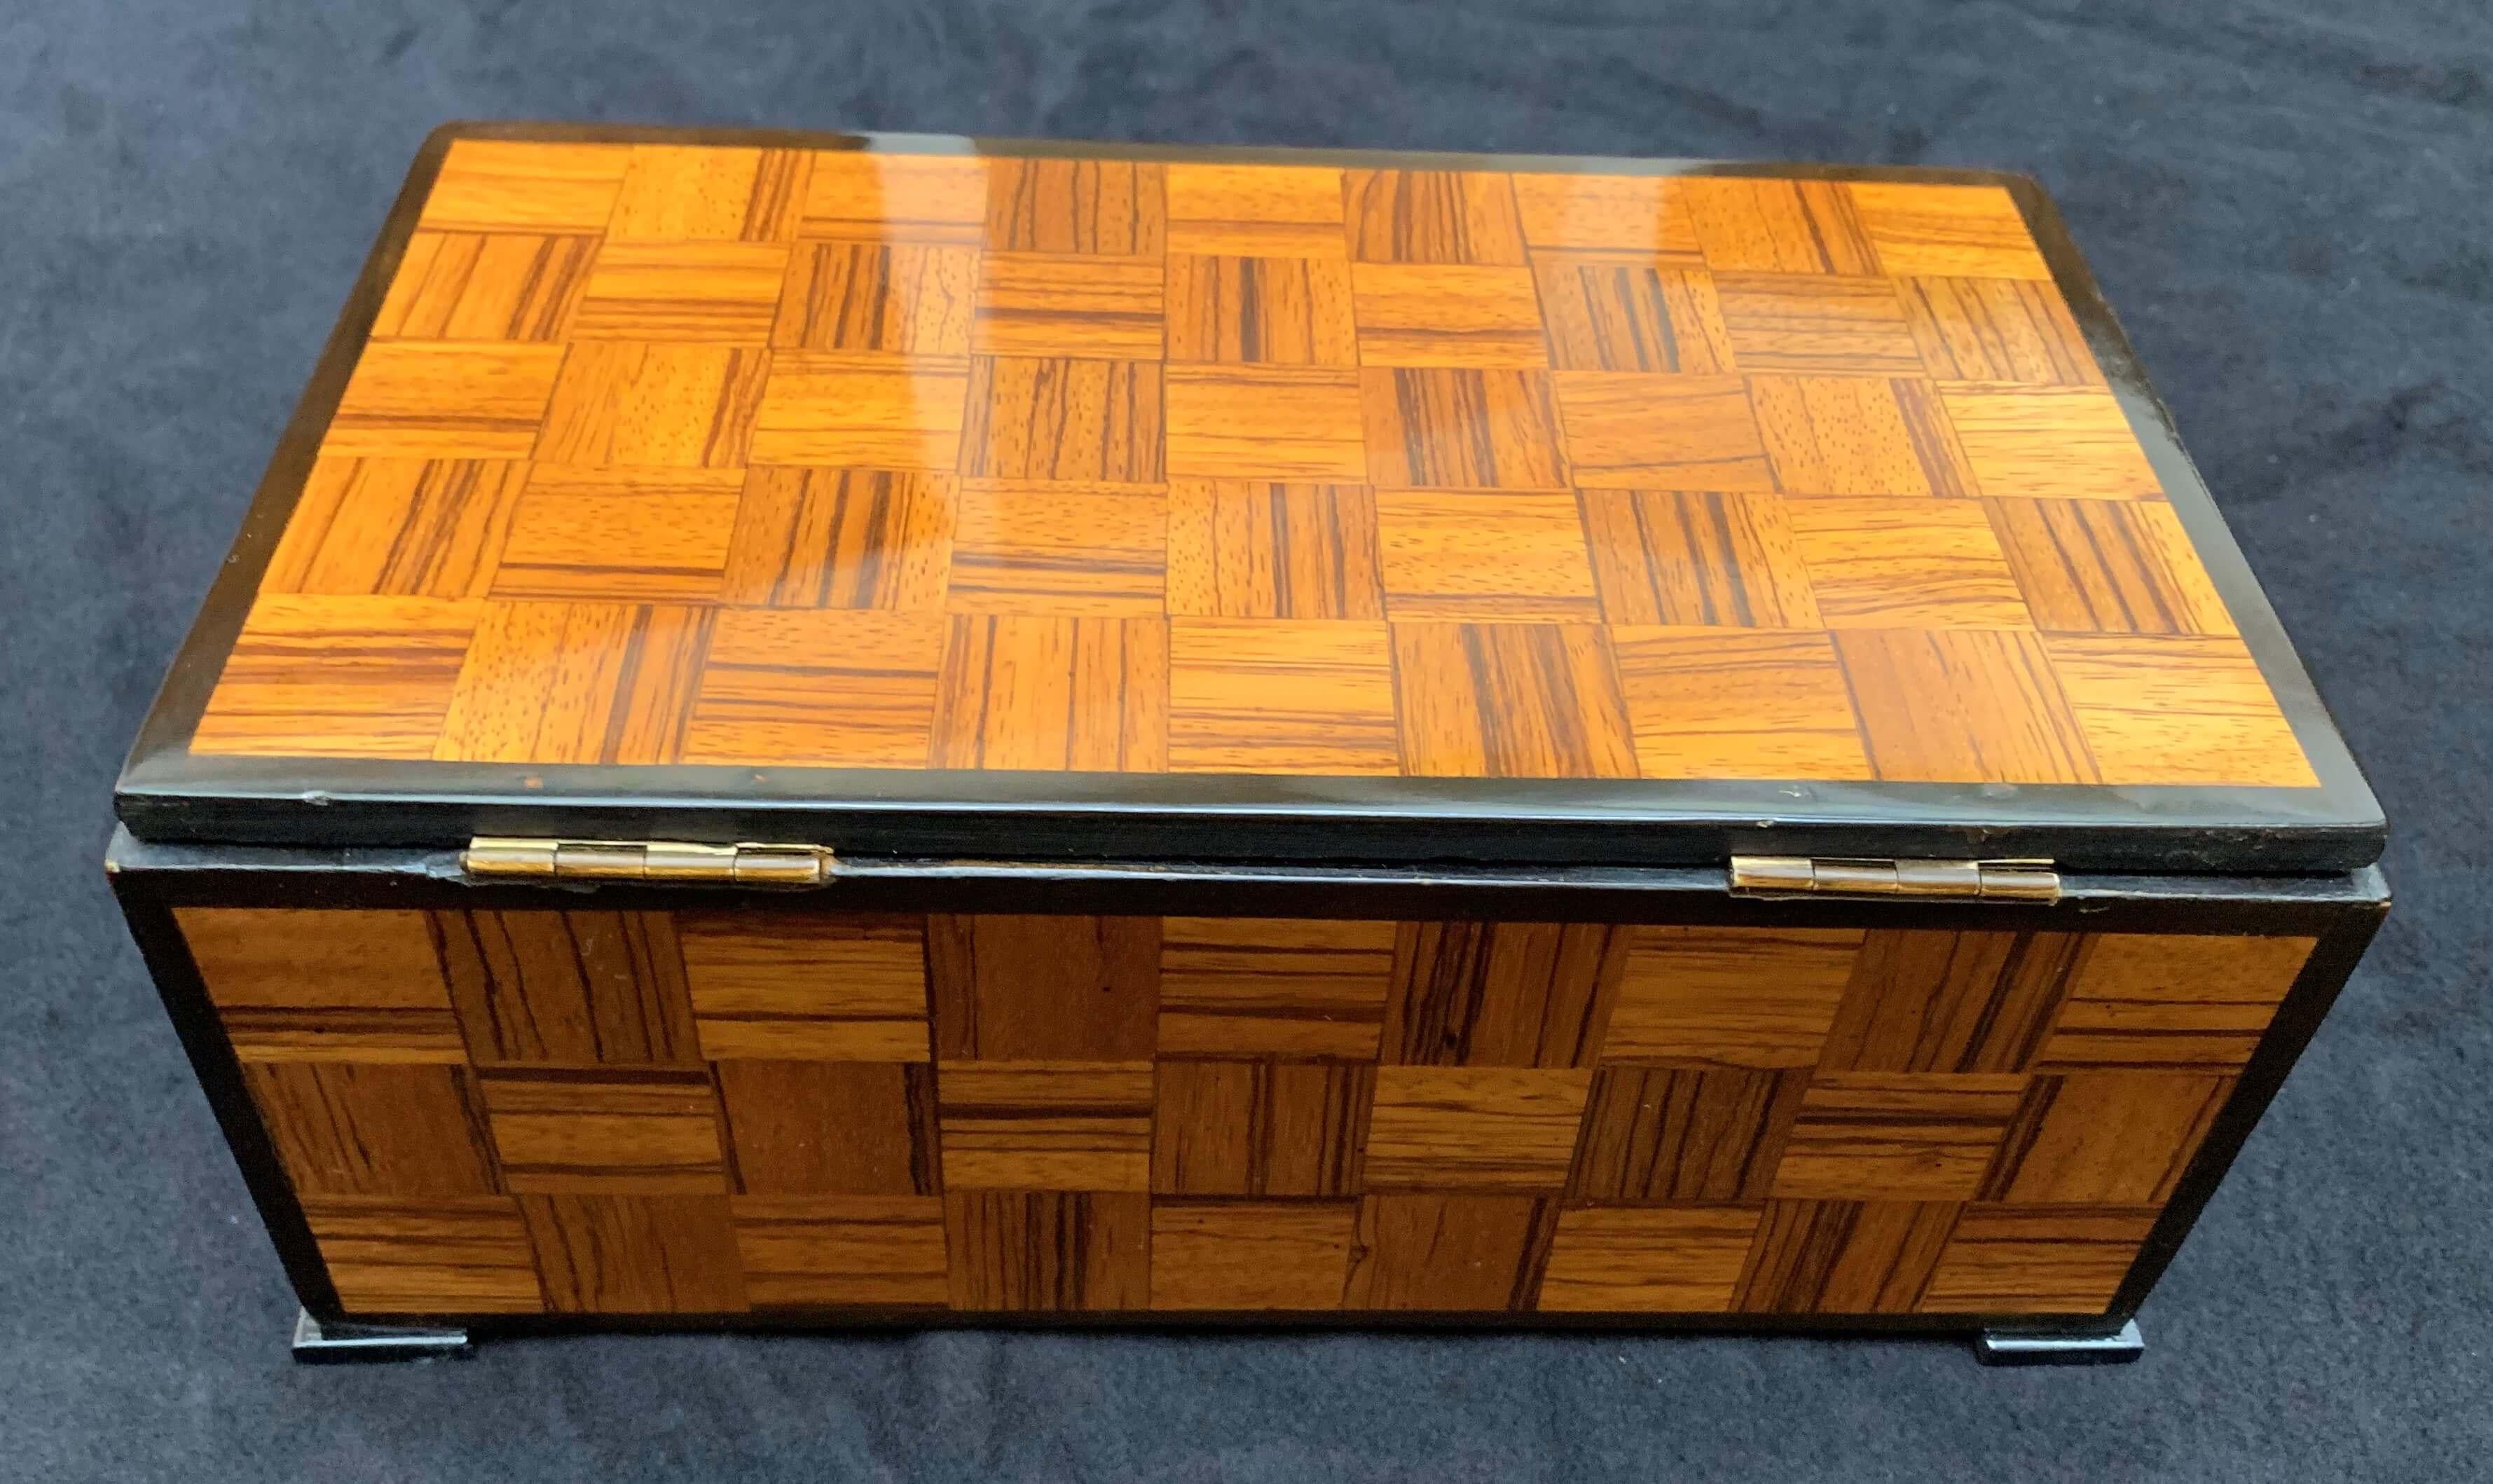 Wonderful Art Deco Jewellery casket box with 